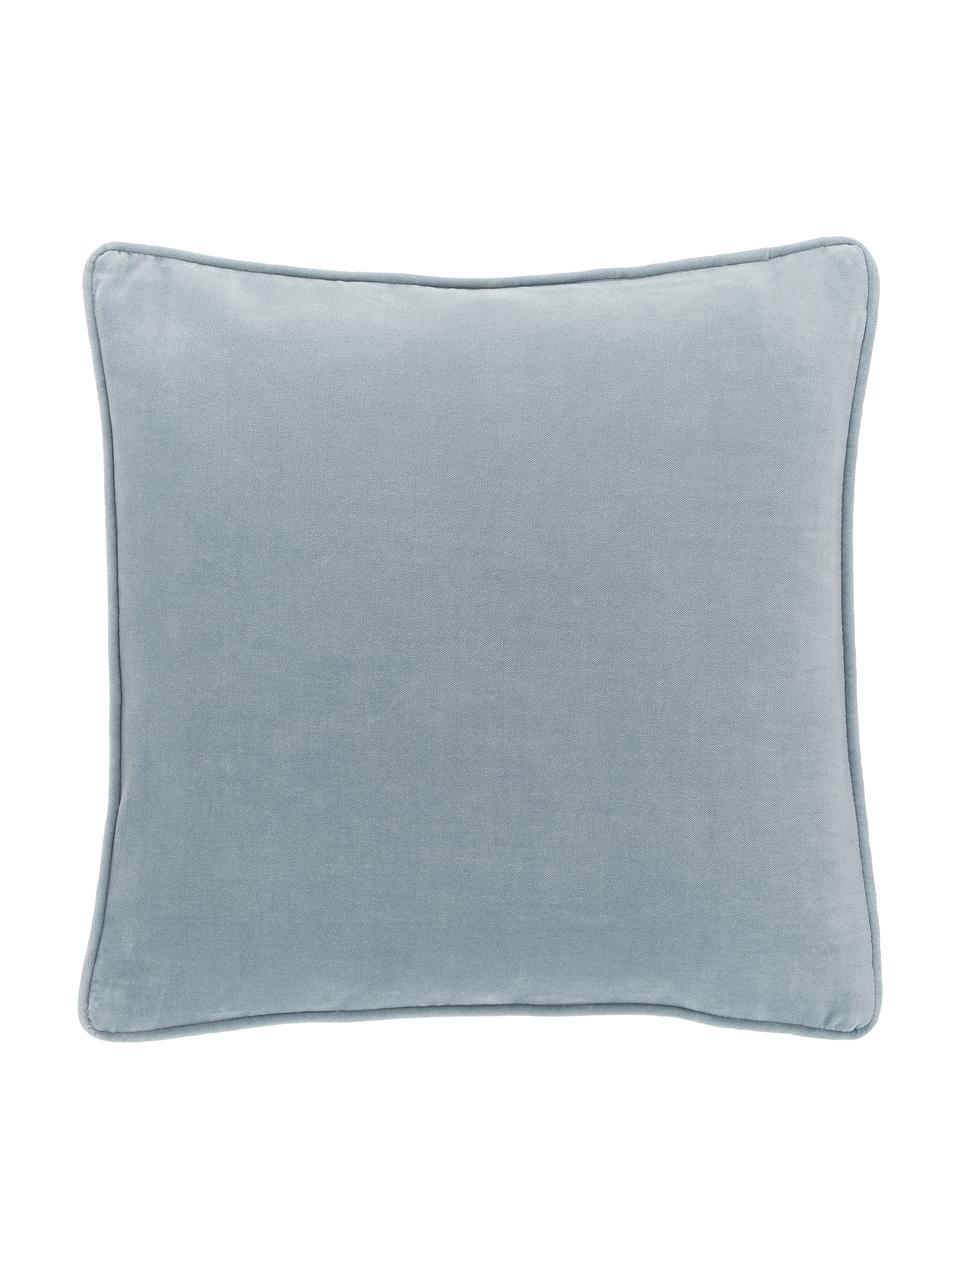 Poszewka na poduszkę z aksamitu Dana, 100% aksamit bawełniany, Jasny niebieski, S 50 x D 50 cm